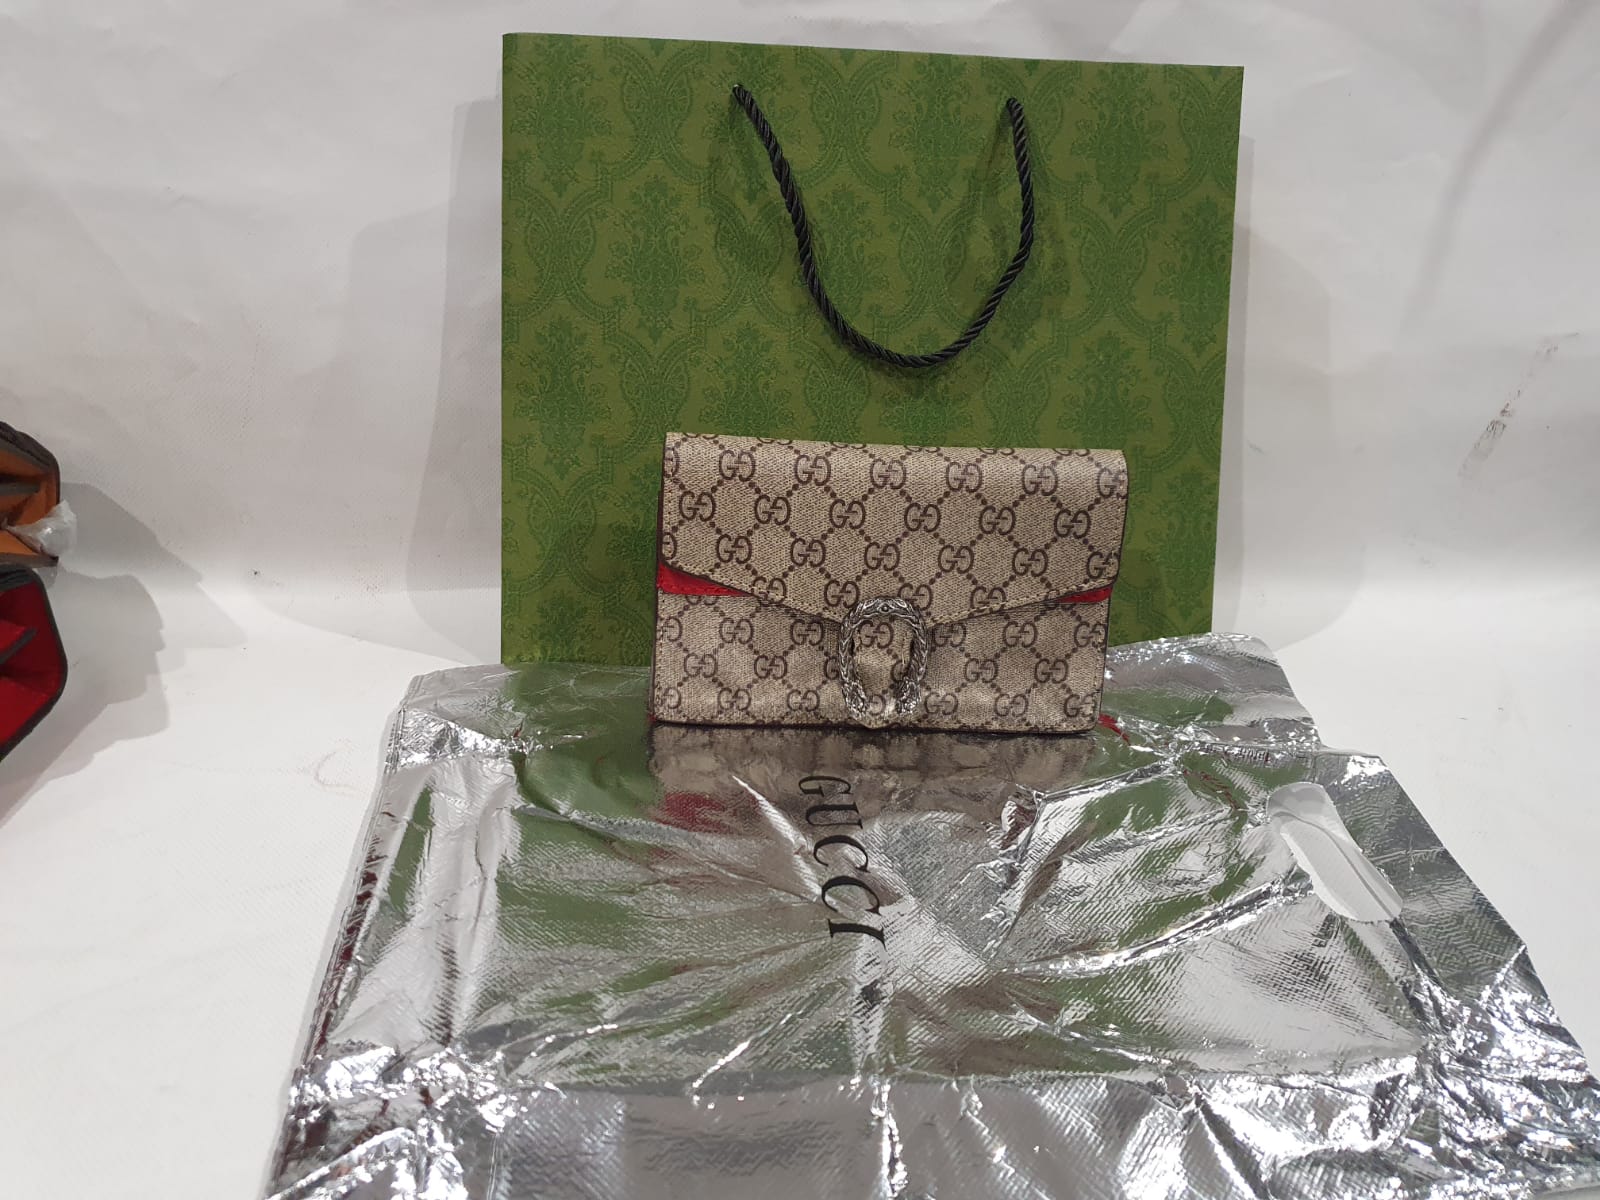 Gucci Dionysus Handbag (Mini)